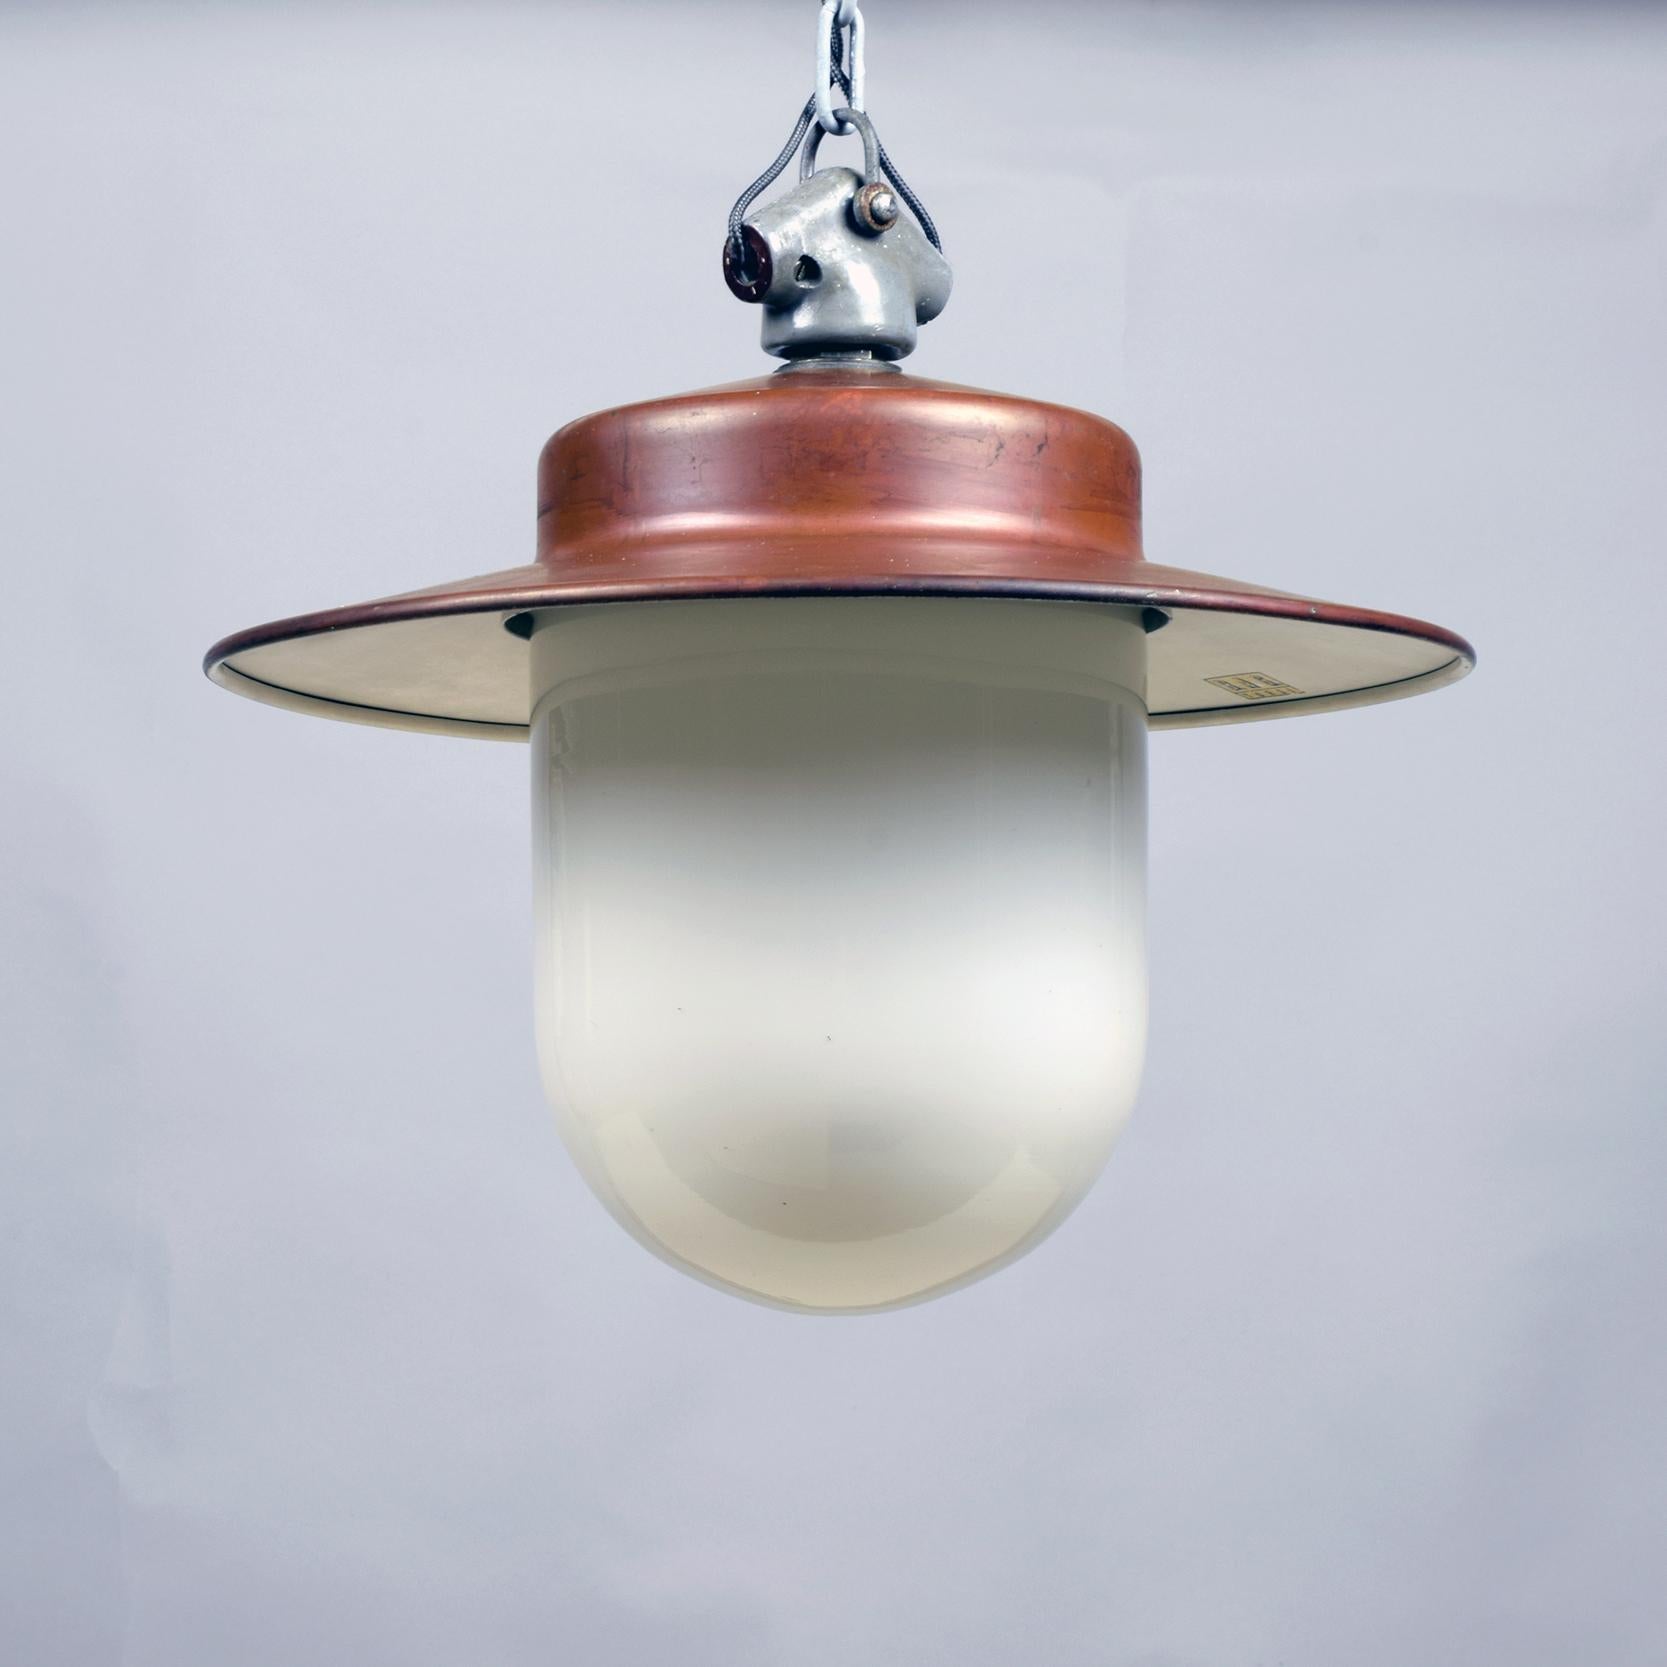 Hin Bredendieck (Designer) zugeschrieben.
B.A.G. Turgi (Hersteller)
Industrielle Hängelampe, um 1930

Eine beeindruckende, elegante Industrielampe, die ein angenehmes, diffuses Licht abgibt.

Kupfer und opakes weißes Glas mit klobiger